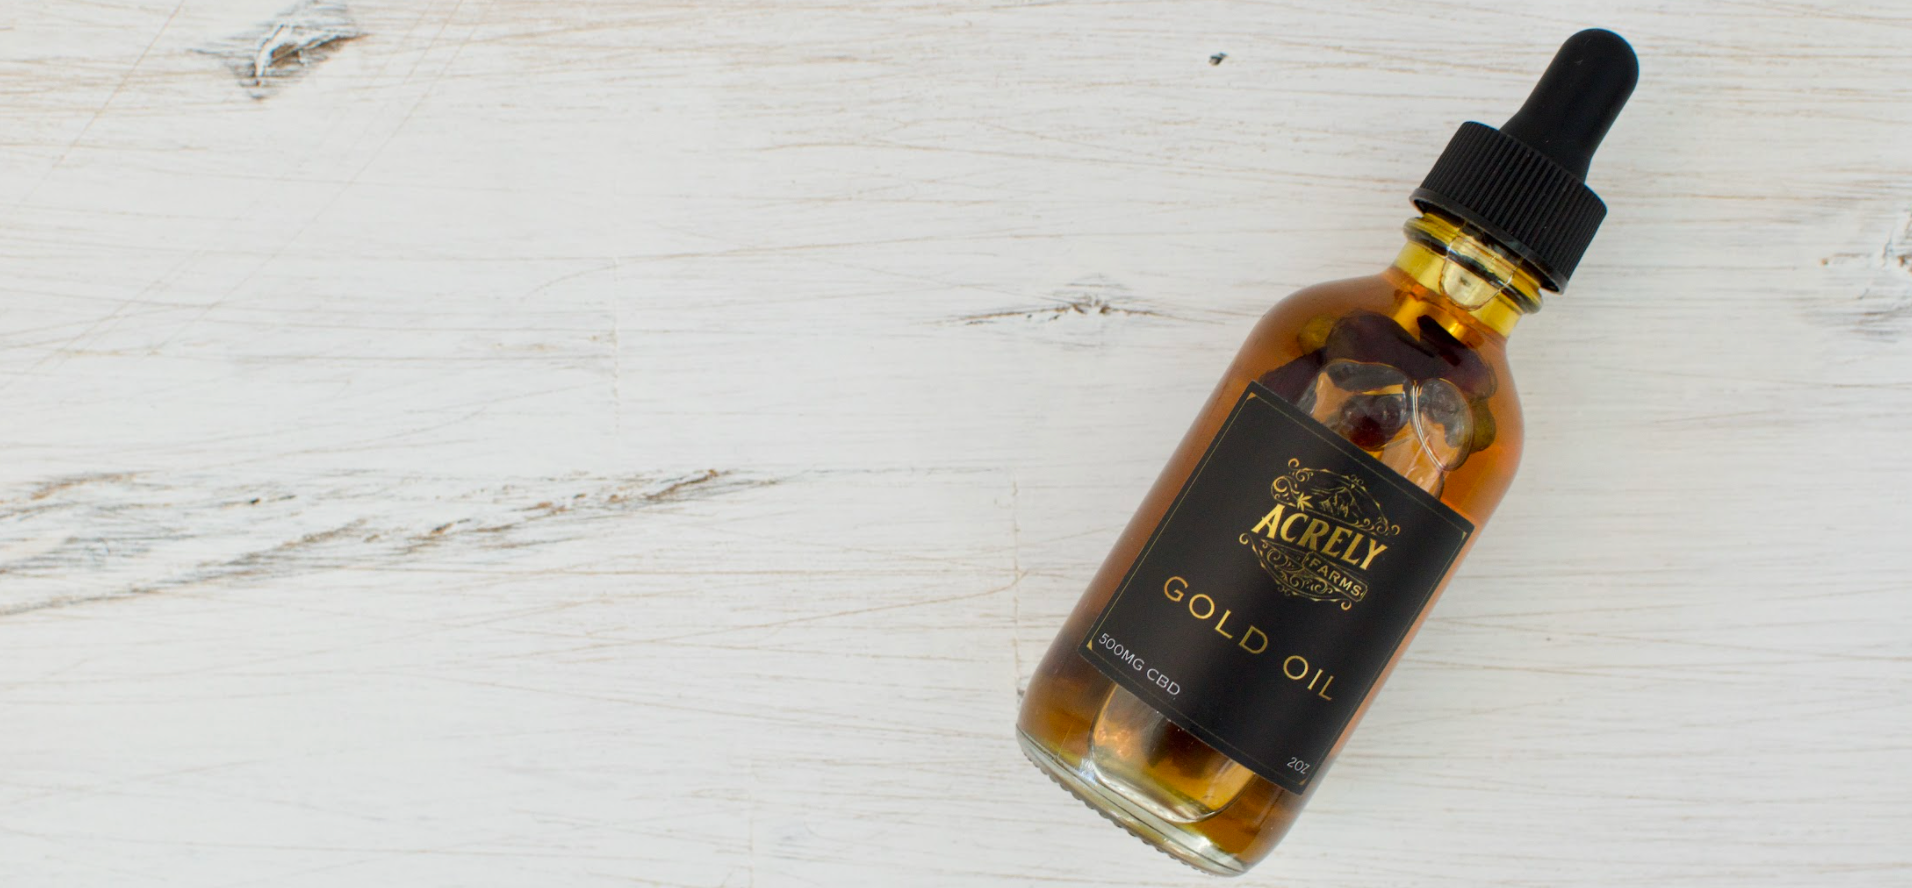 Gold CBD Body Oil | Acrely Farms